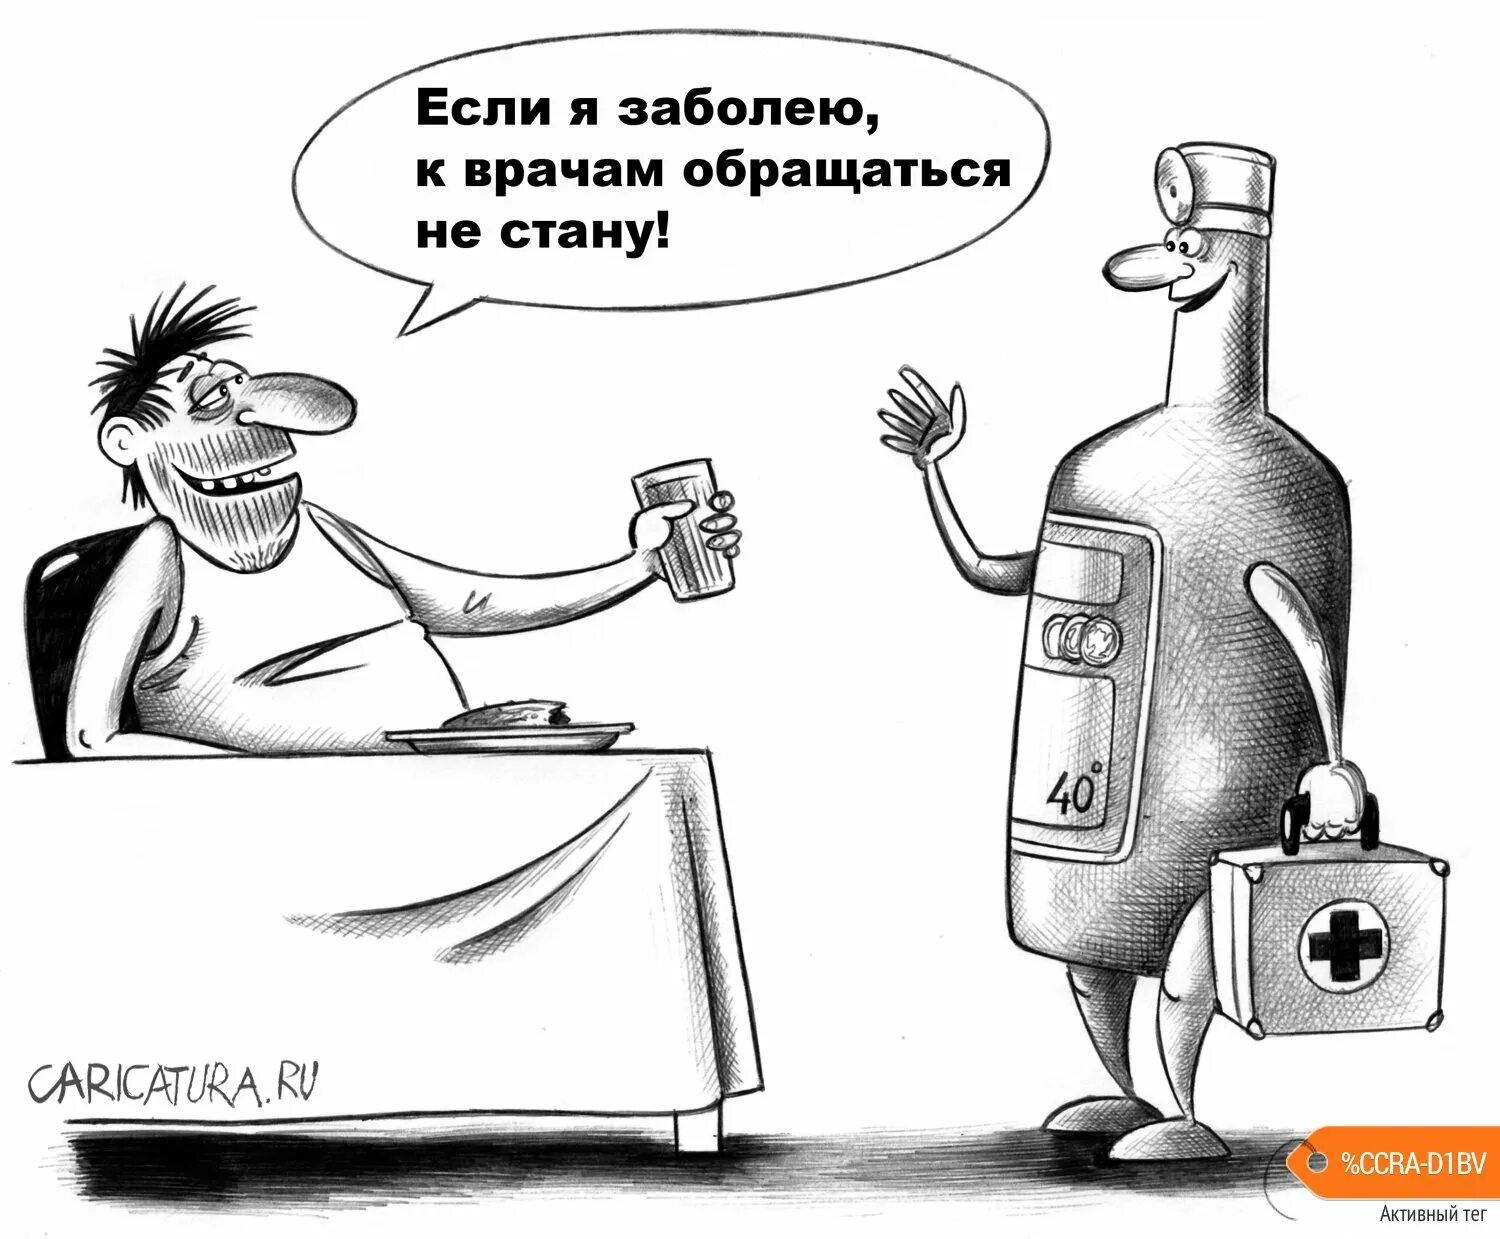 Я был болен и врачи. Карикатура ру. Алкоголик карикатура.